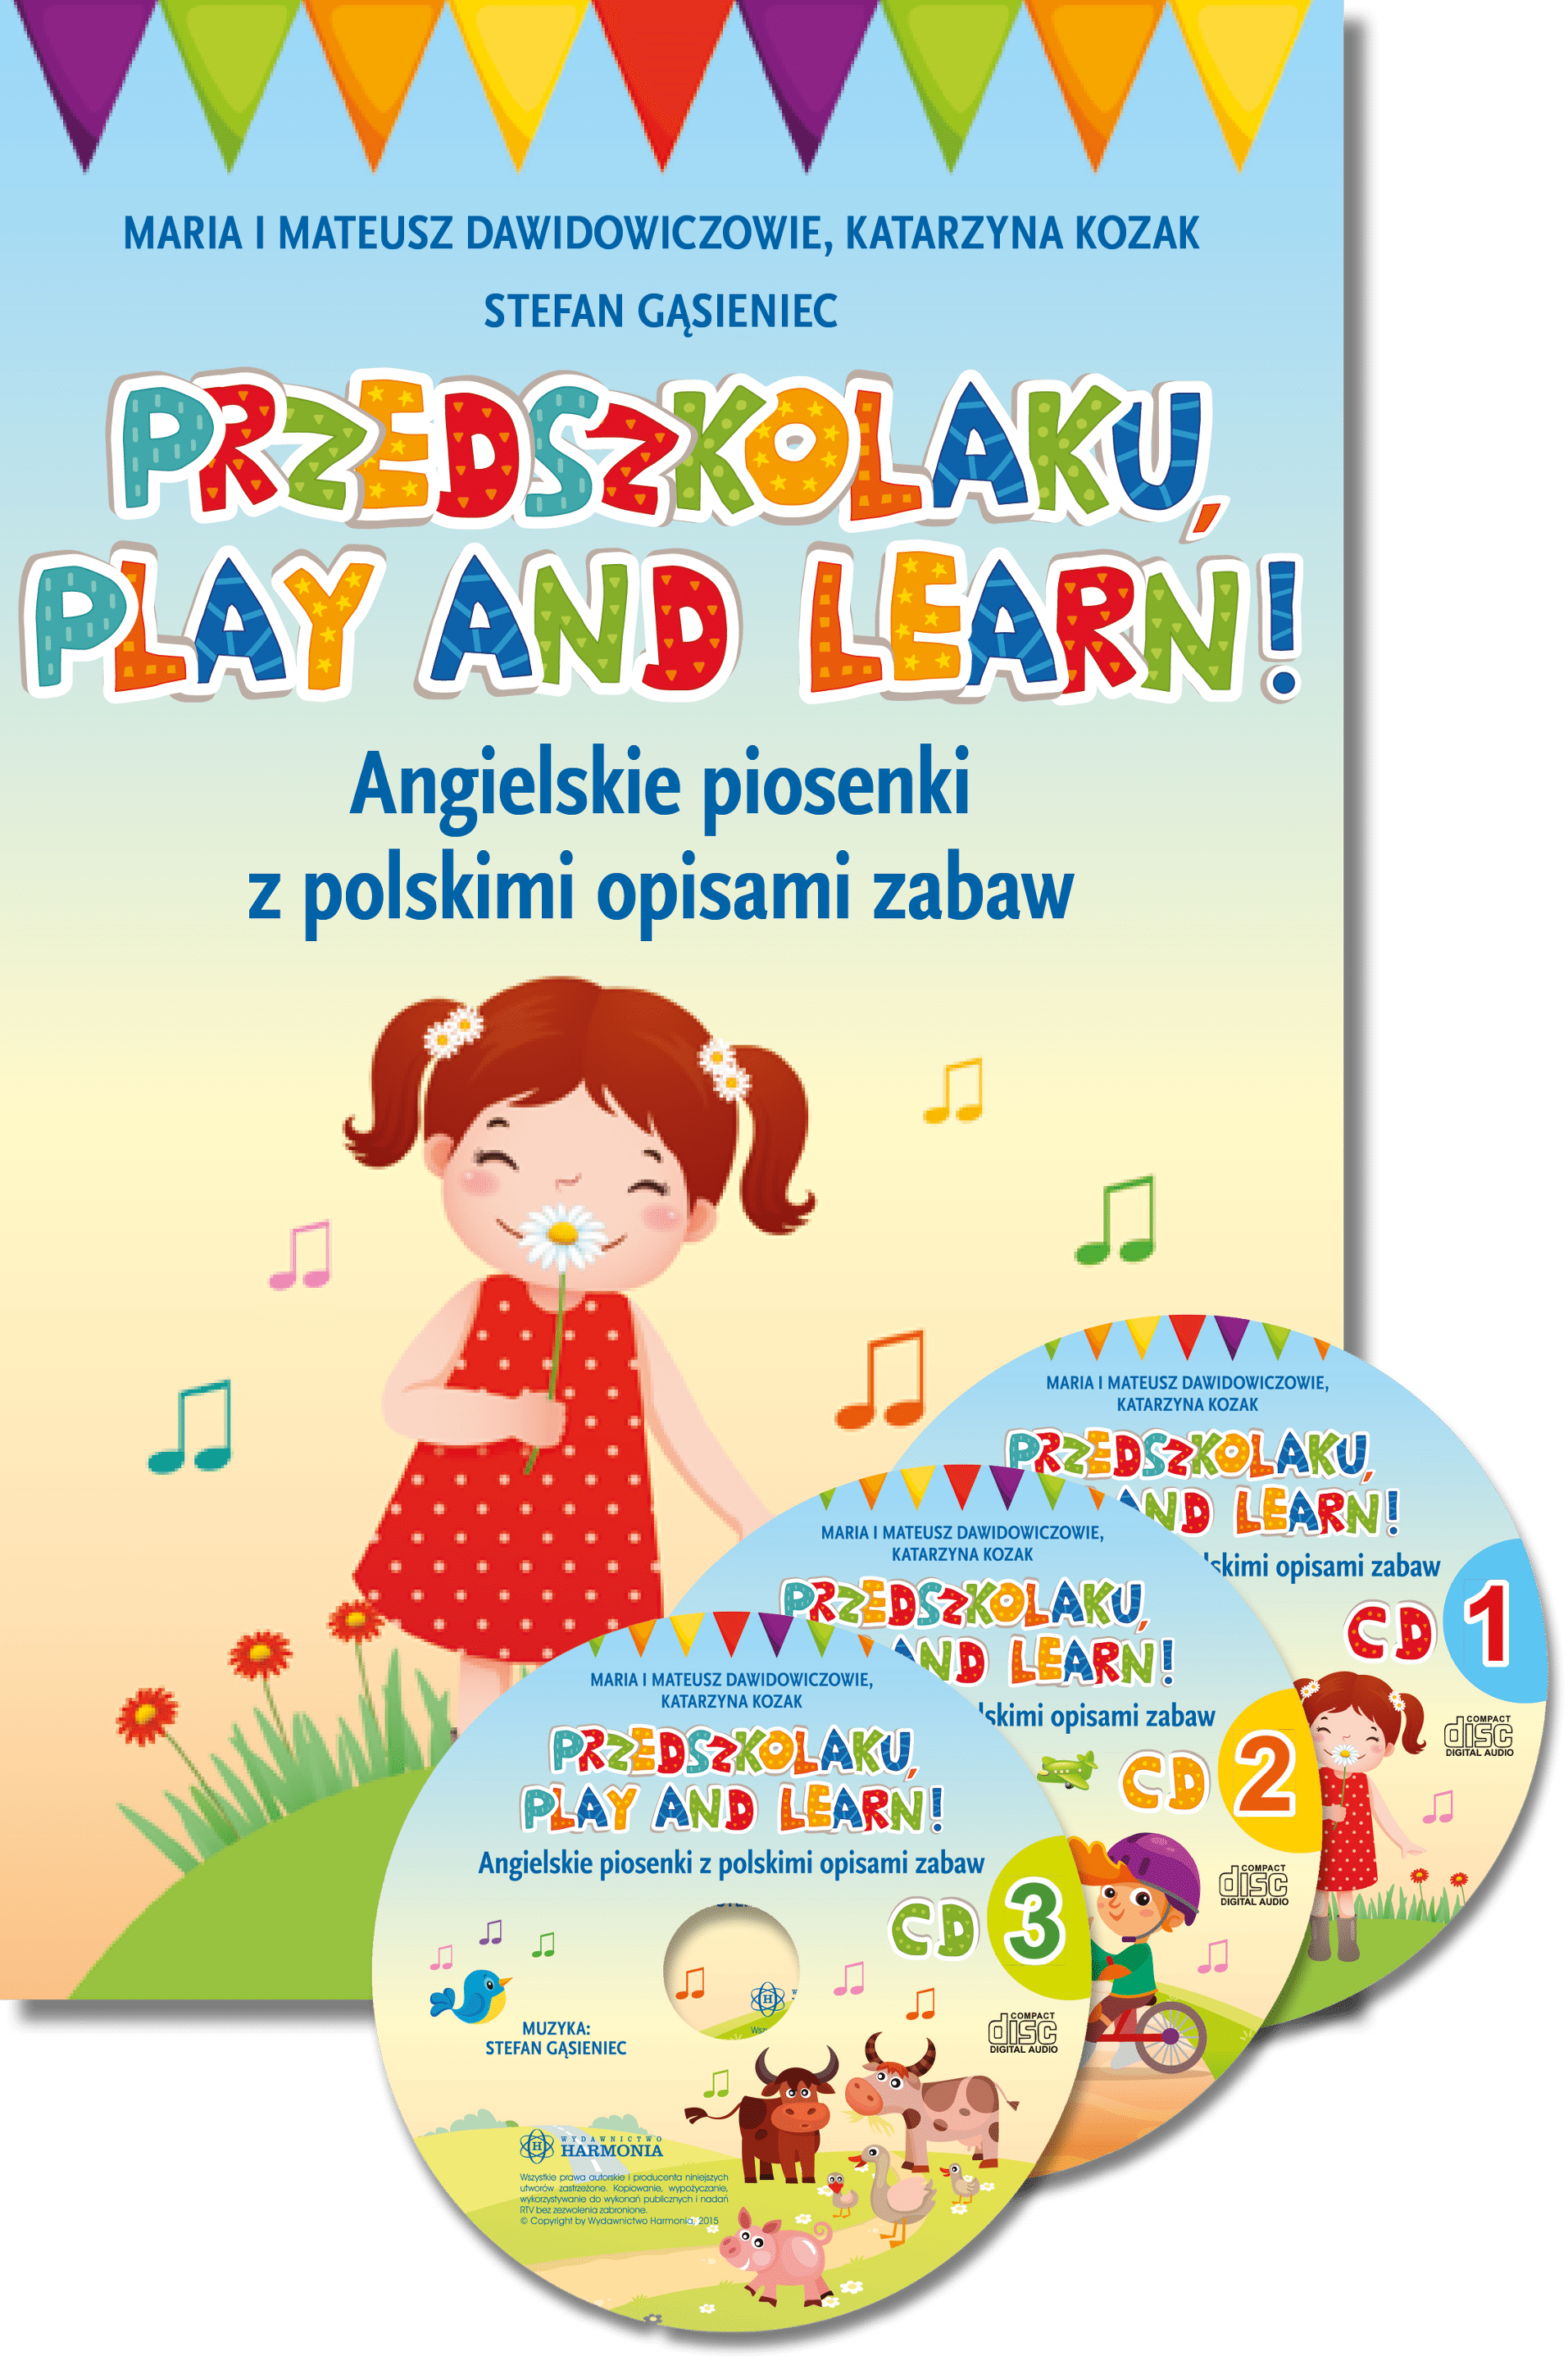 Przedszkolaku, play and learn!. Angielskie piosenki z polskimi opisami zabaw